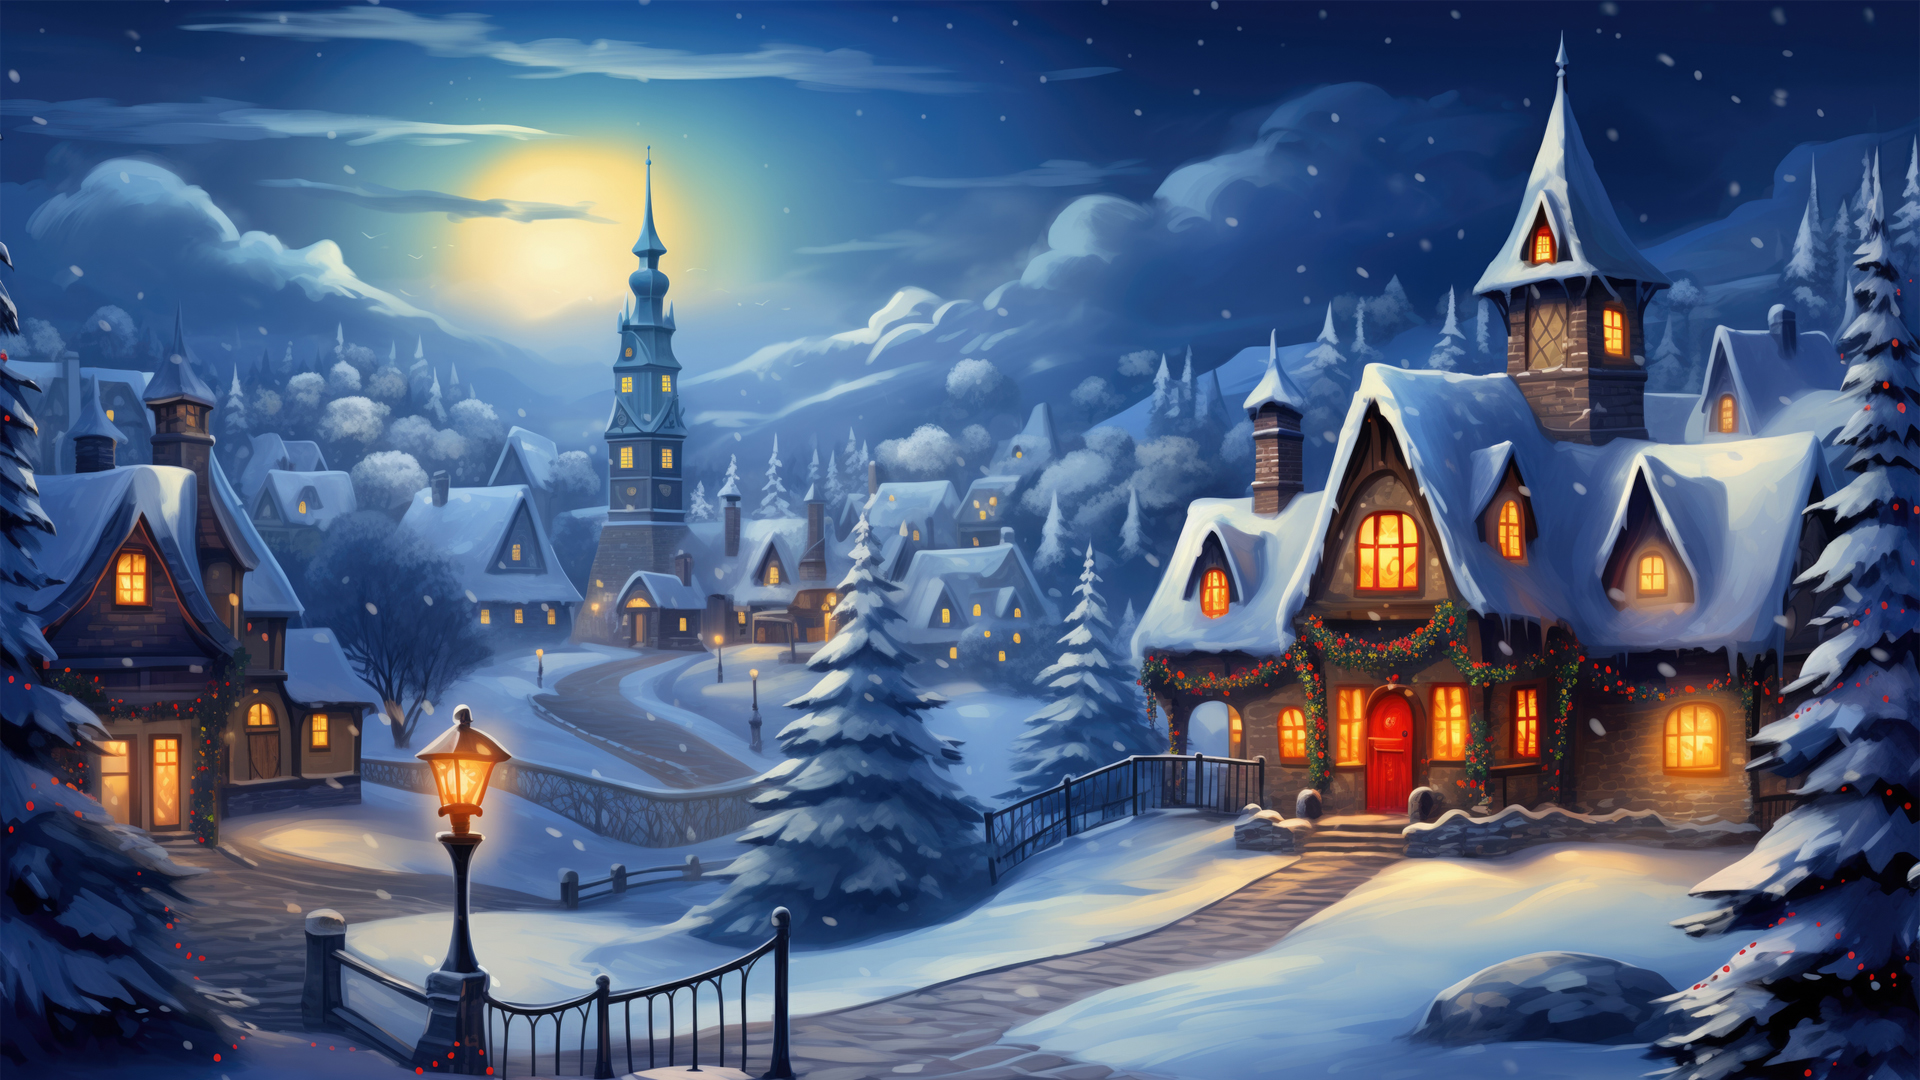 圣诞节 村庄 绘画风景 雪景 桌面高清壁纸